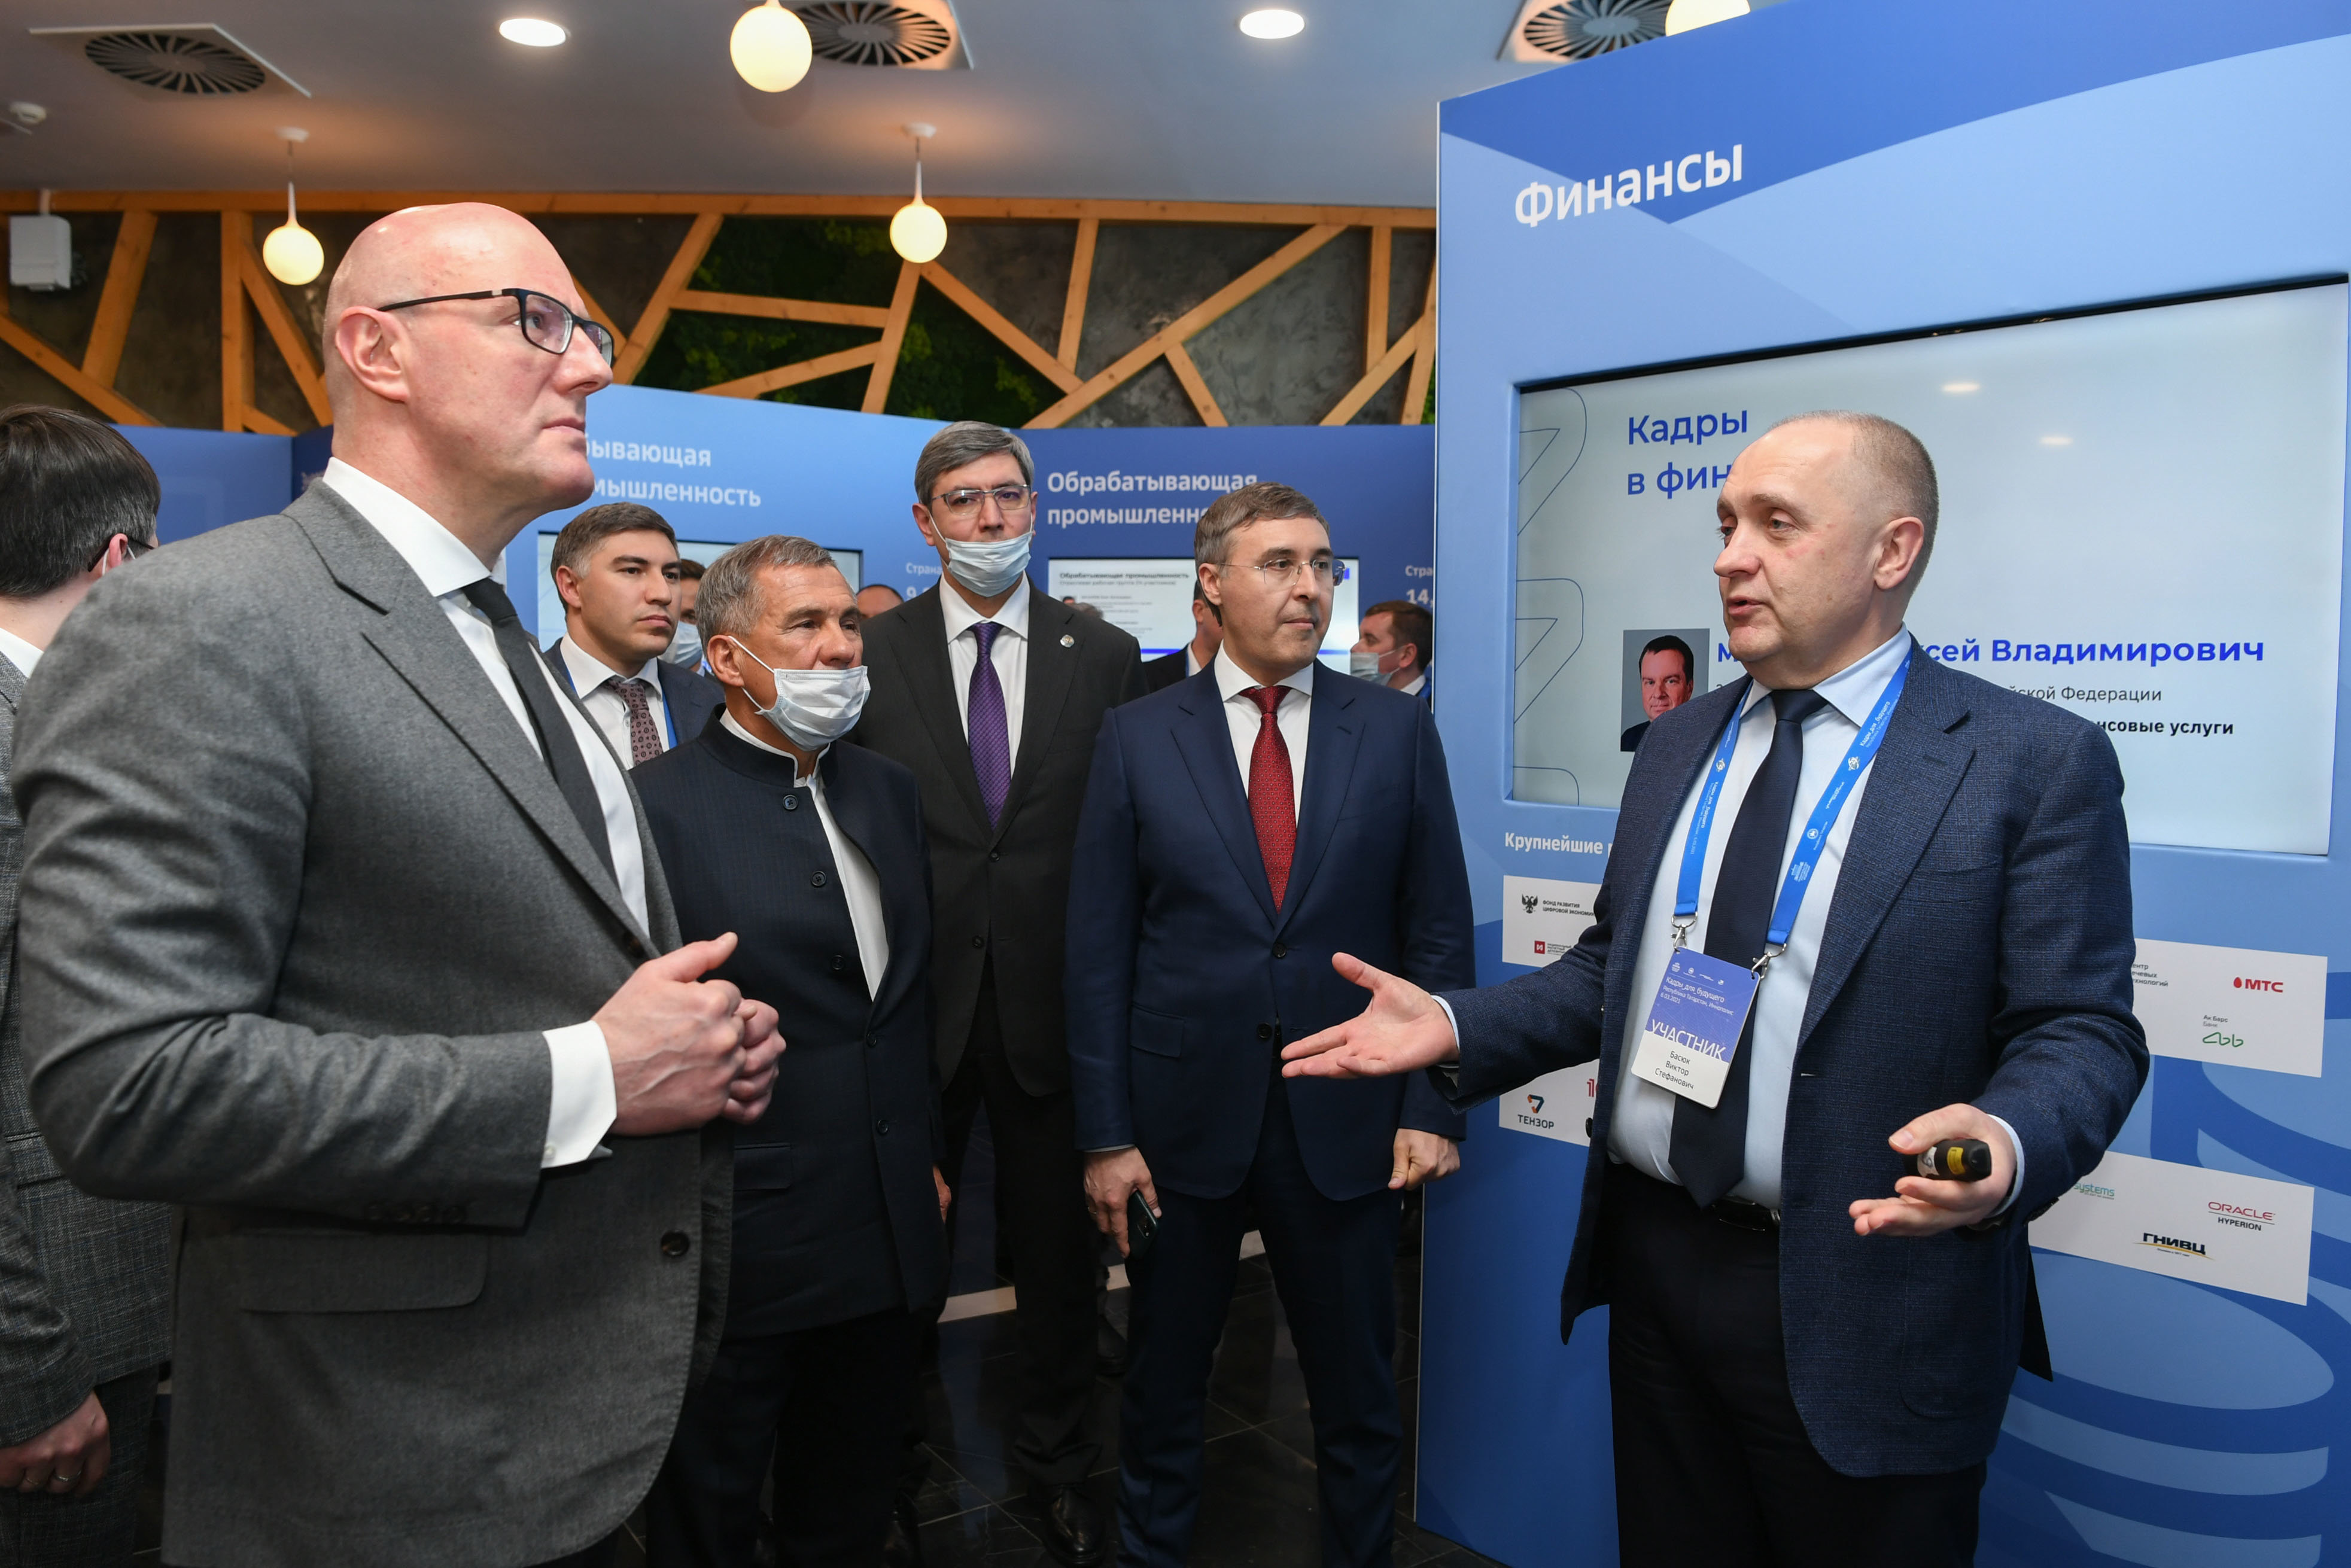 Вице-премьер Дмитрий Чернышенко нацелил вузы к цифровой трансформации